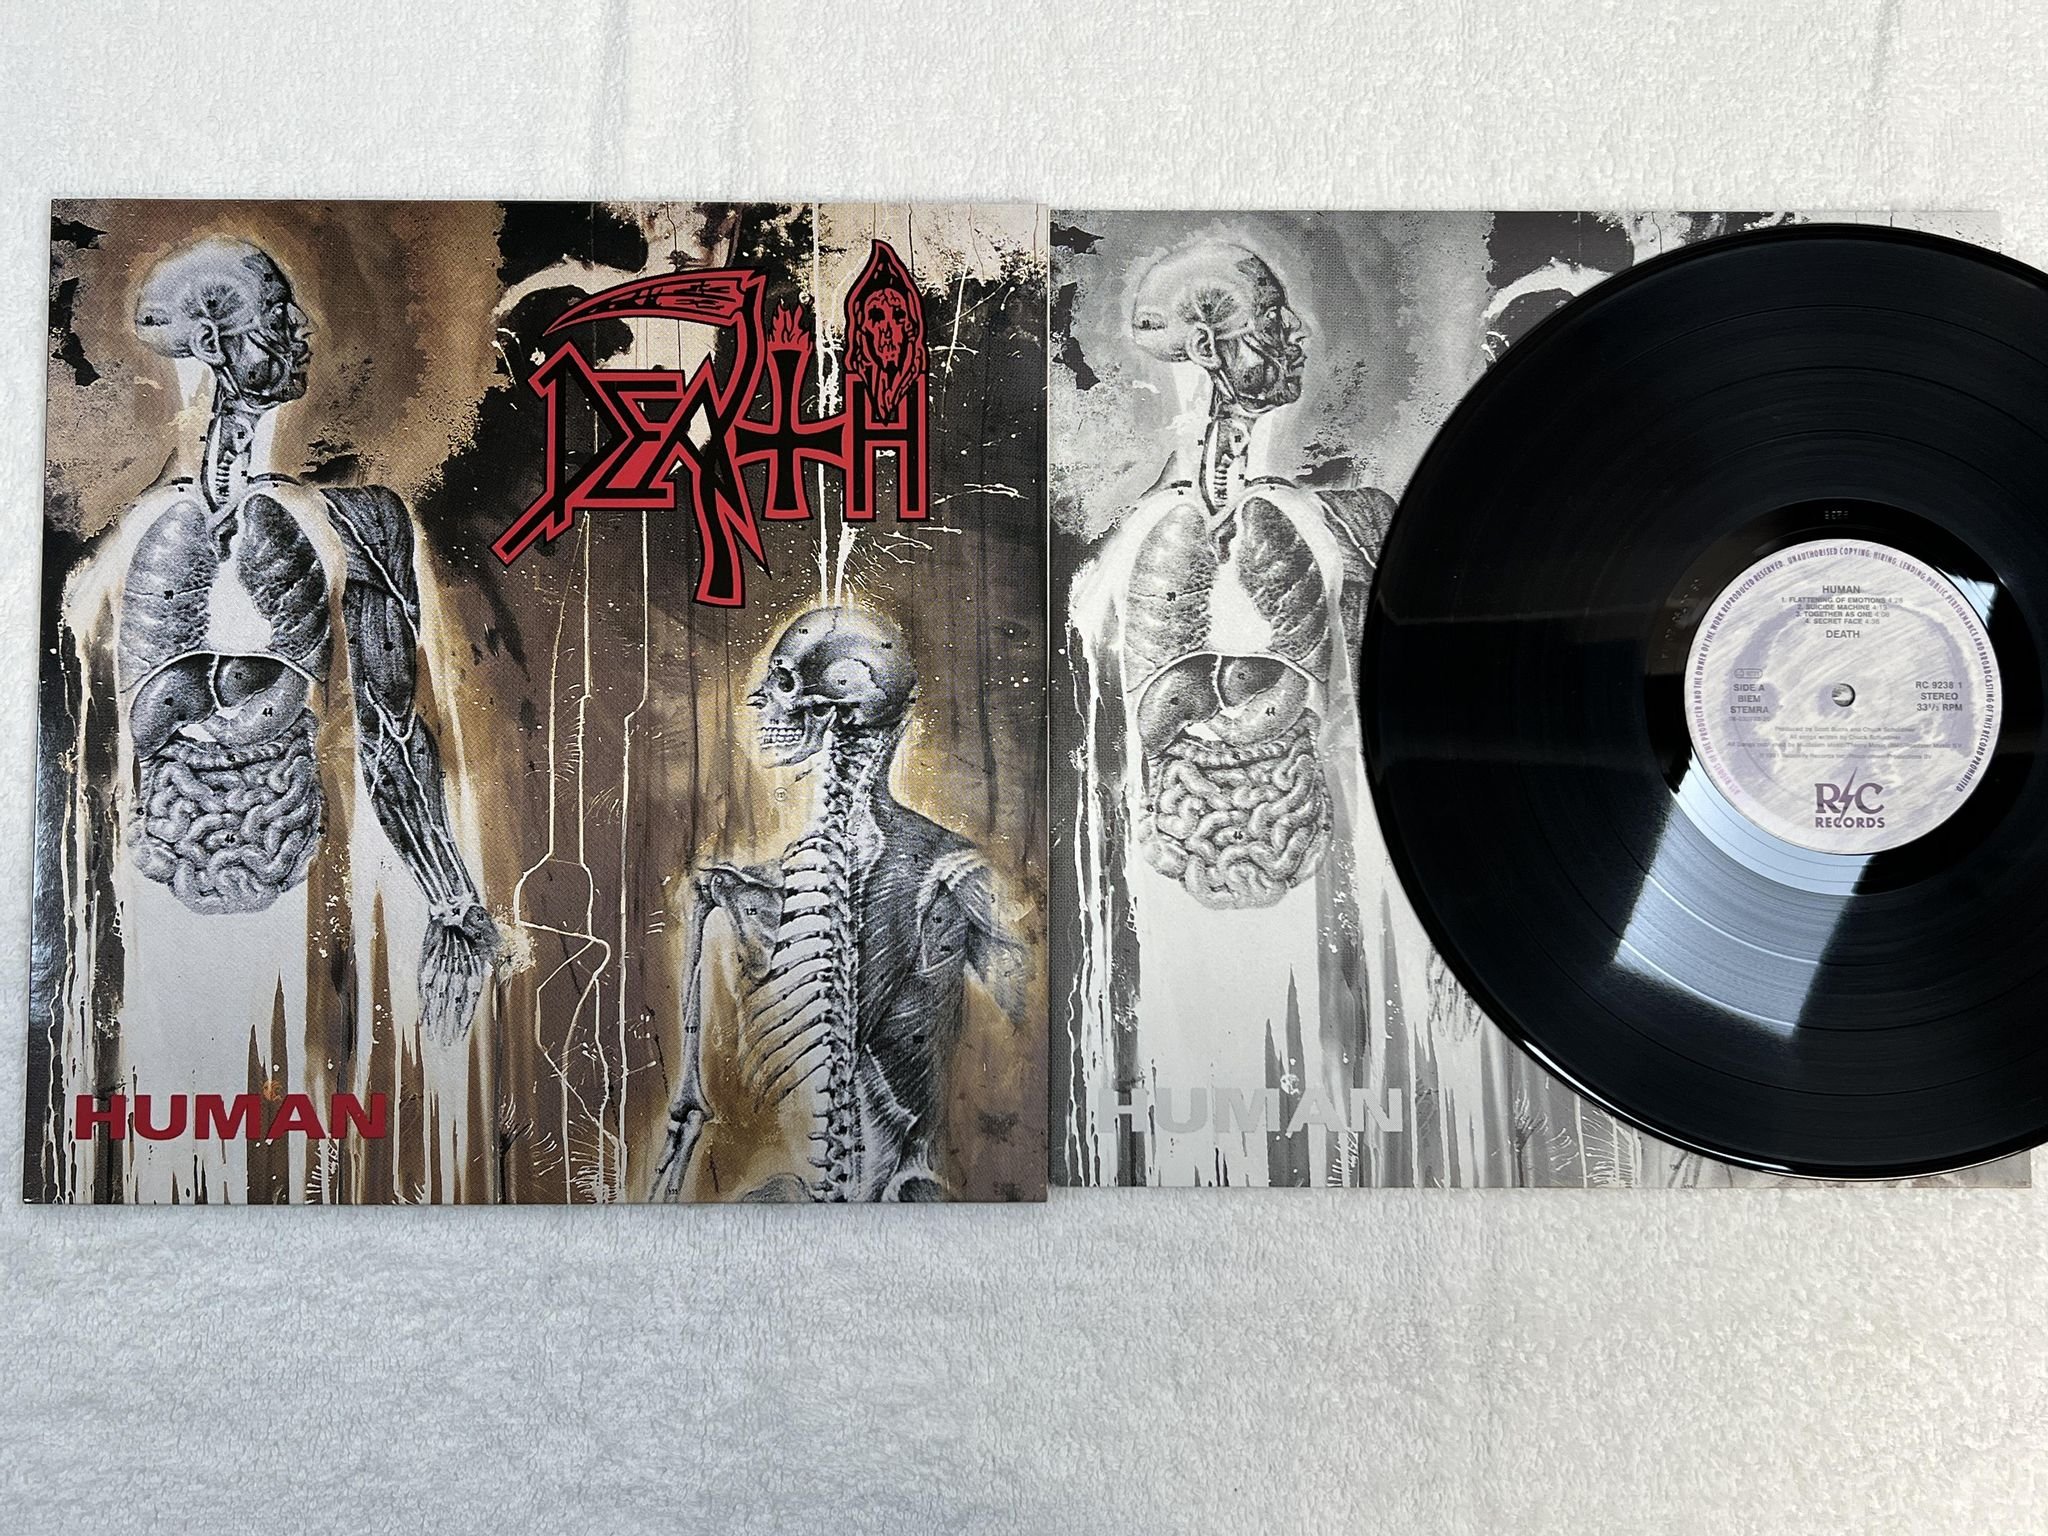 Omslagsbild för skivan DEATH human LP -91 R/C RC 9238 1 ***** mega rare death metal *****